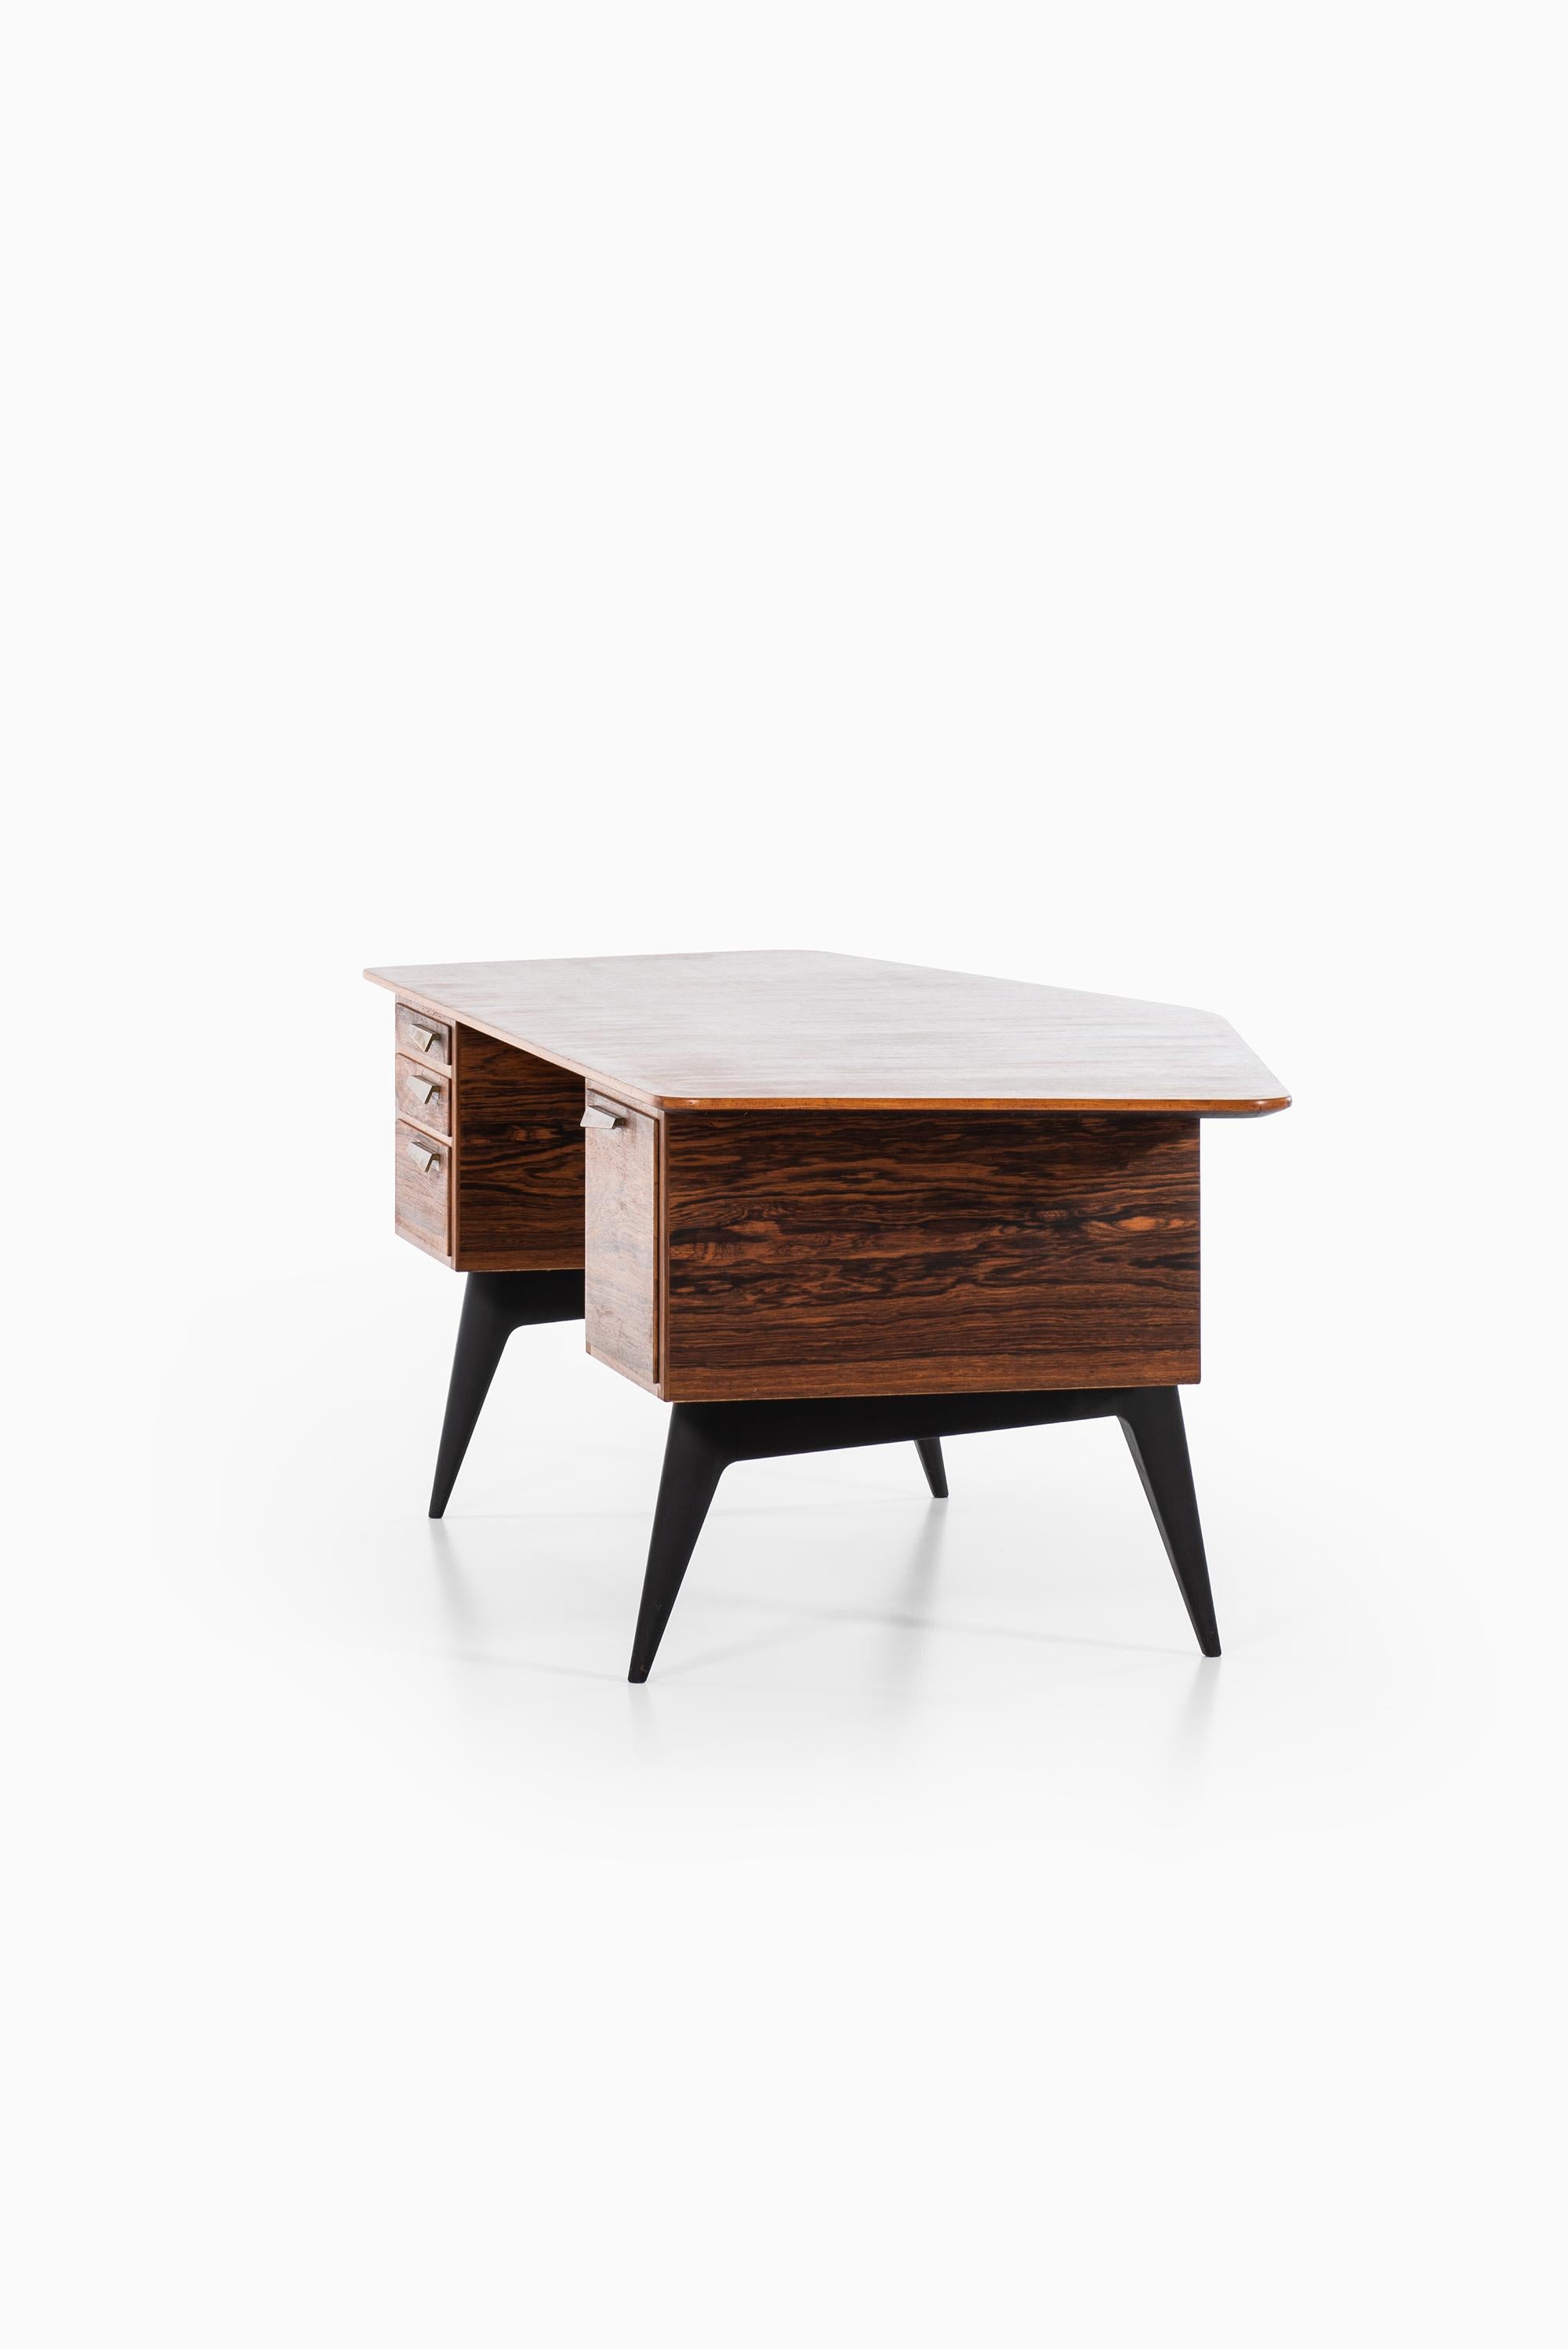 Hadar Schmidt Desk in Rosewood Produced by Hadar Schmidt in Sweden For Sale 2